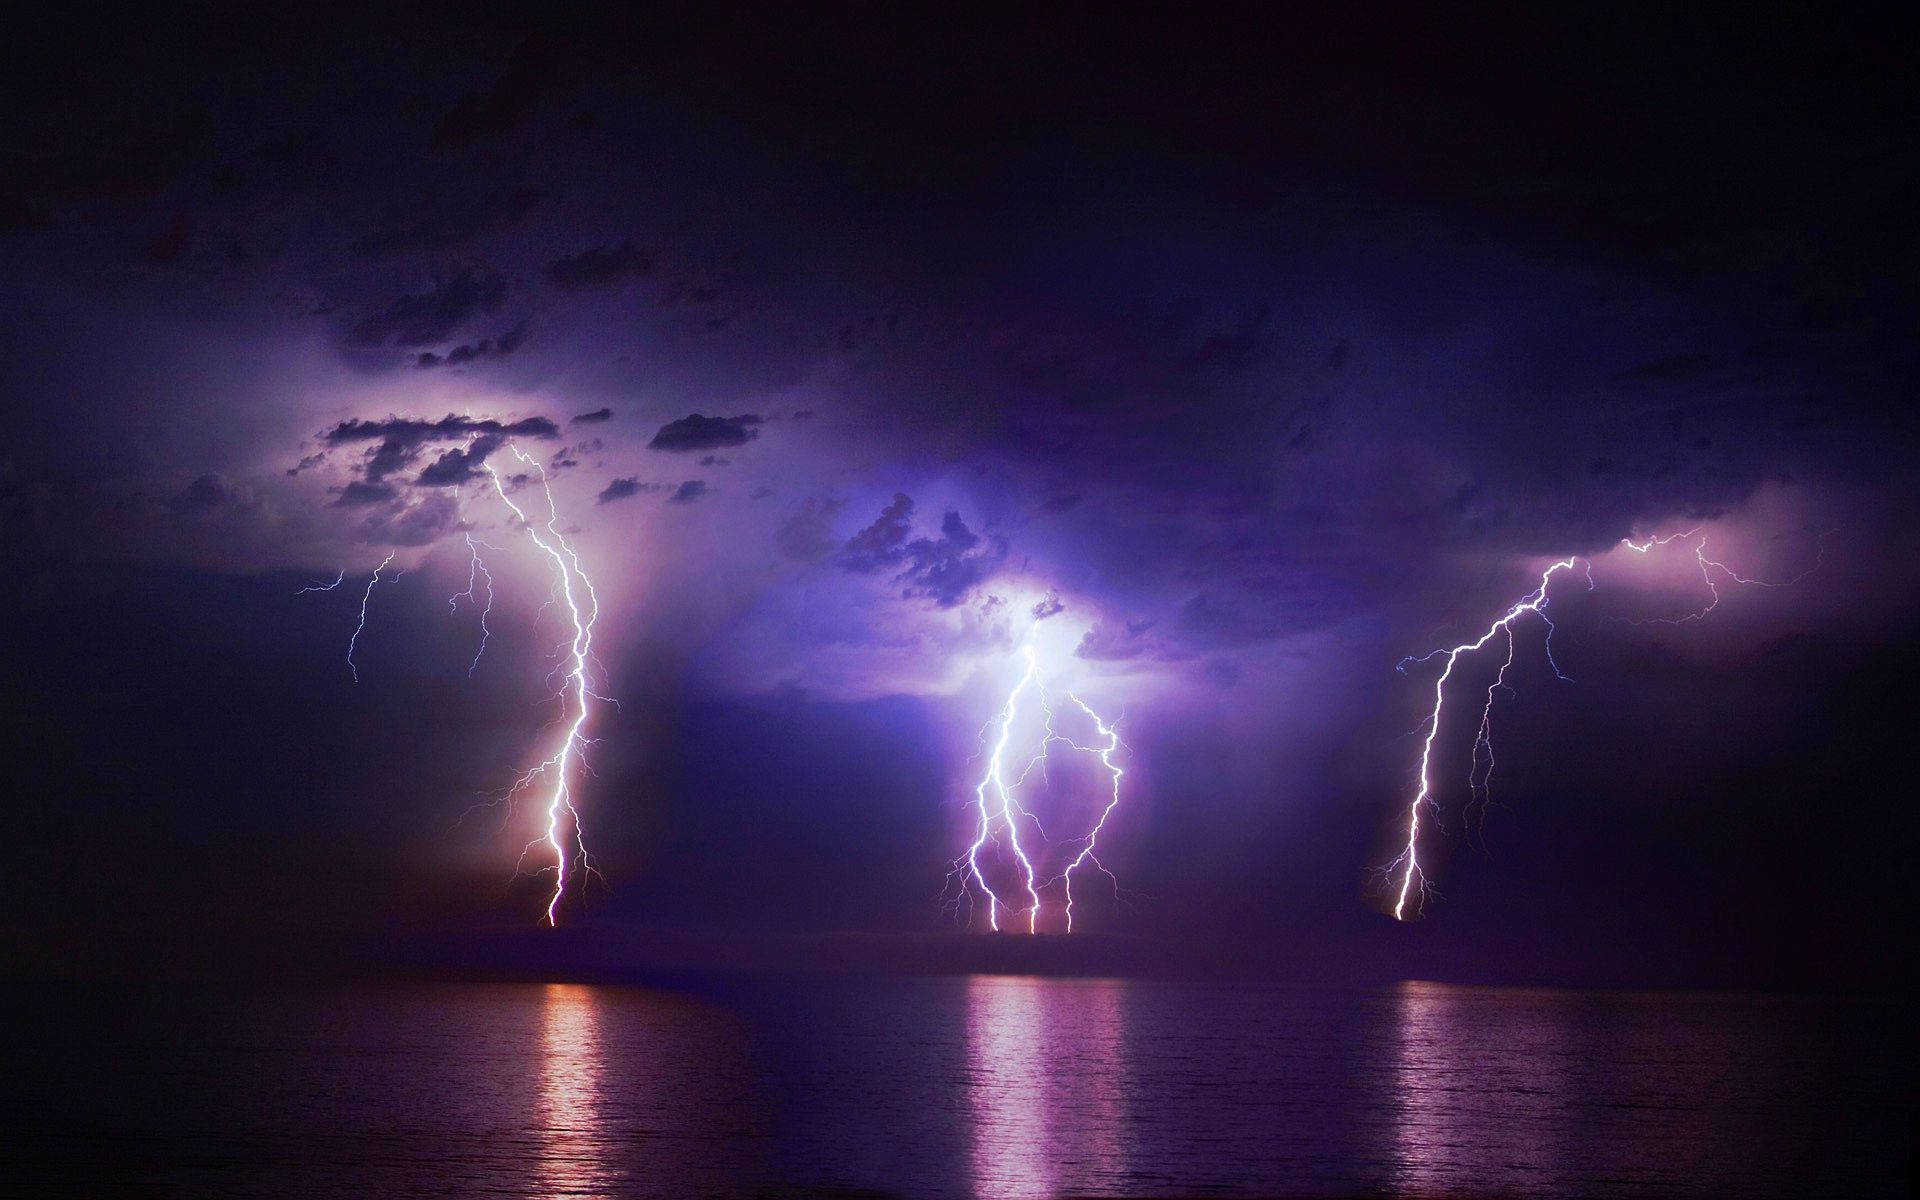 A lightning bolt illuminates the night sky near the ocean. Wallpaper